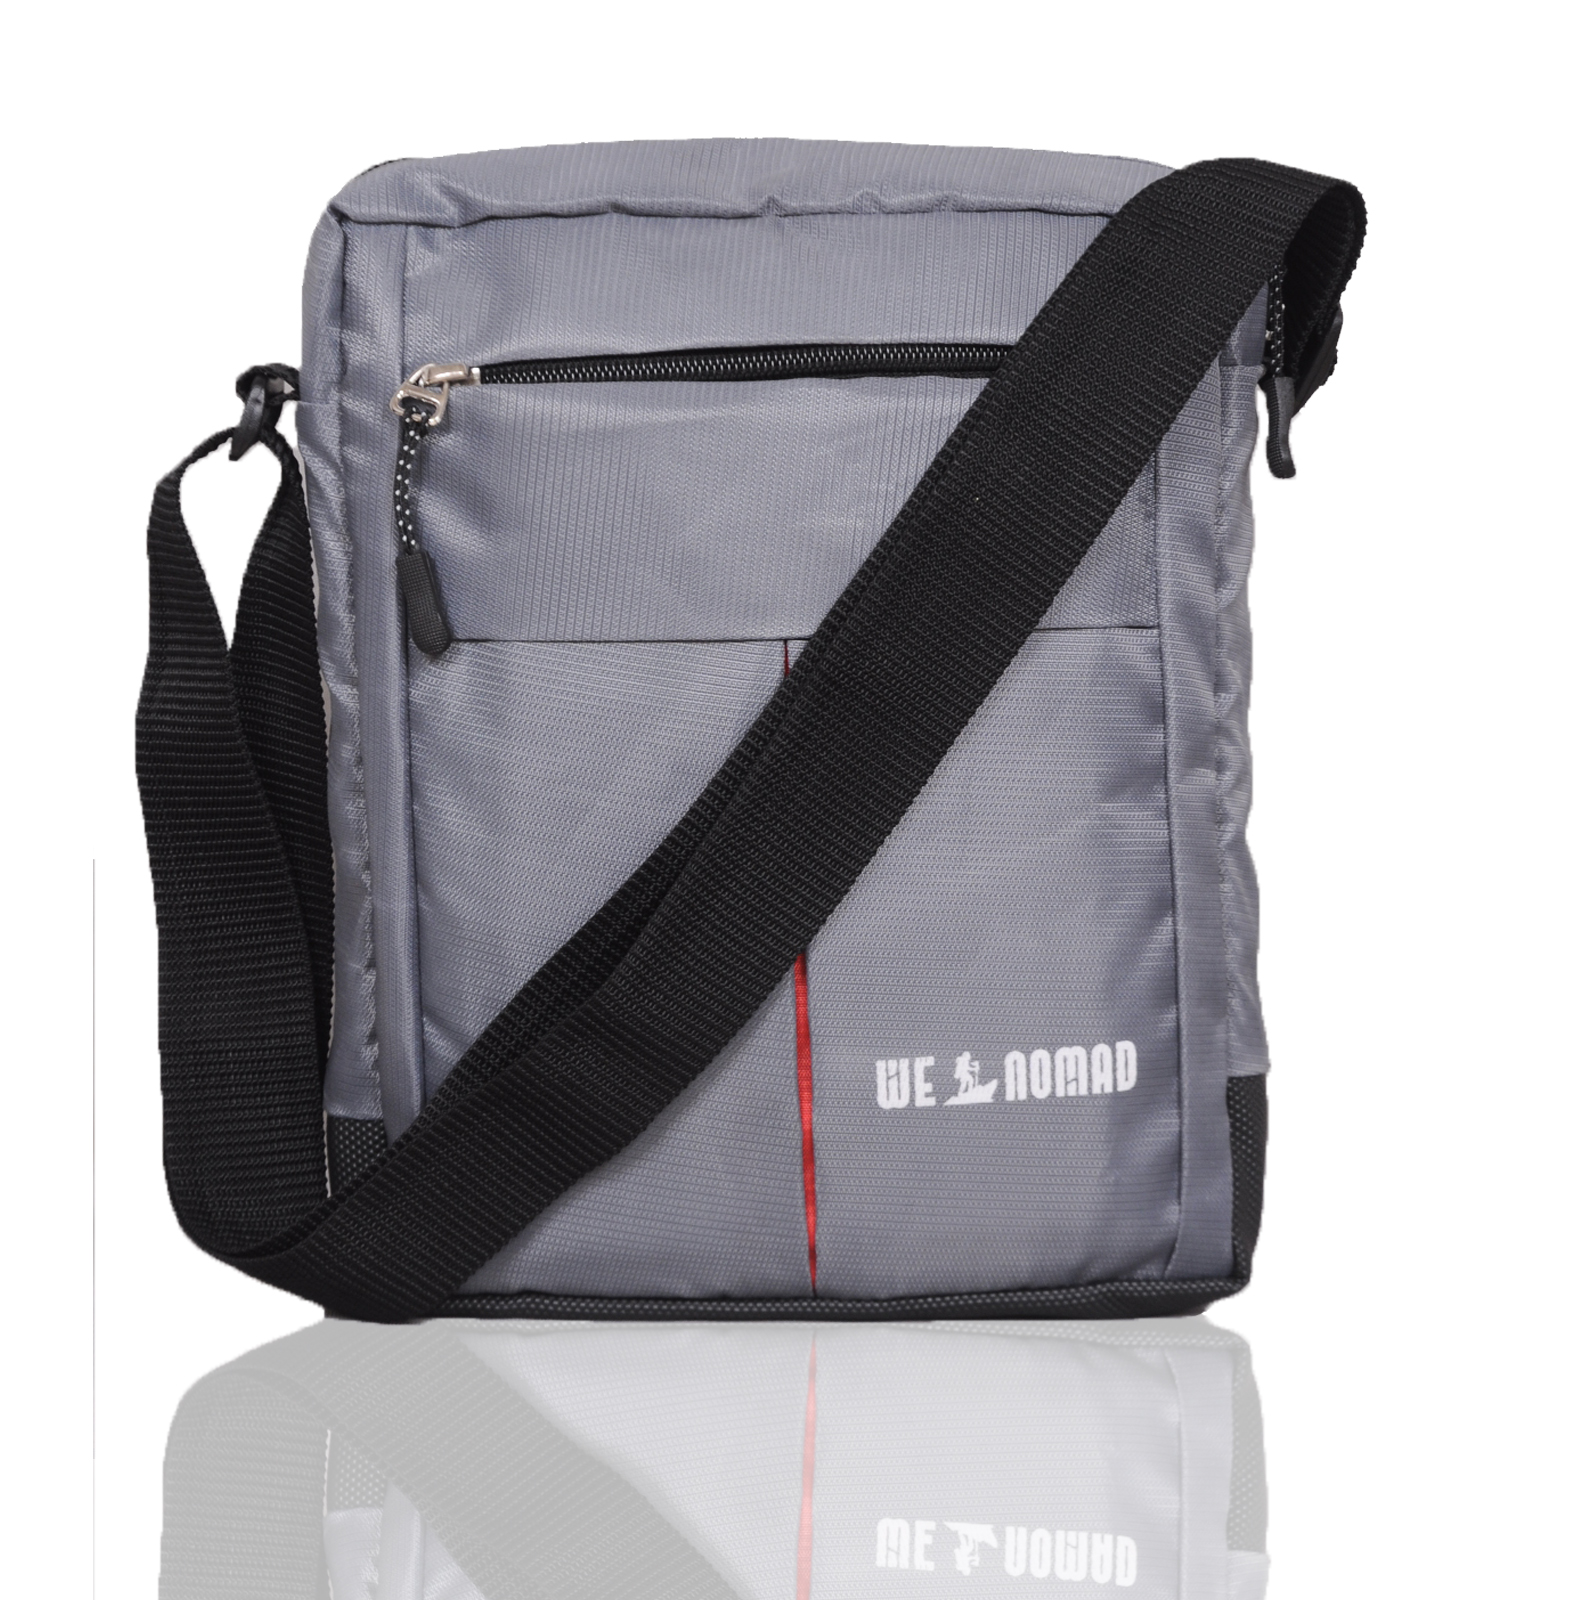 Mens sling bag small size for travel crossbody chest bags for women | side  bag for men stylish passport holder sling cash bags